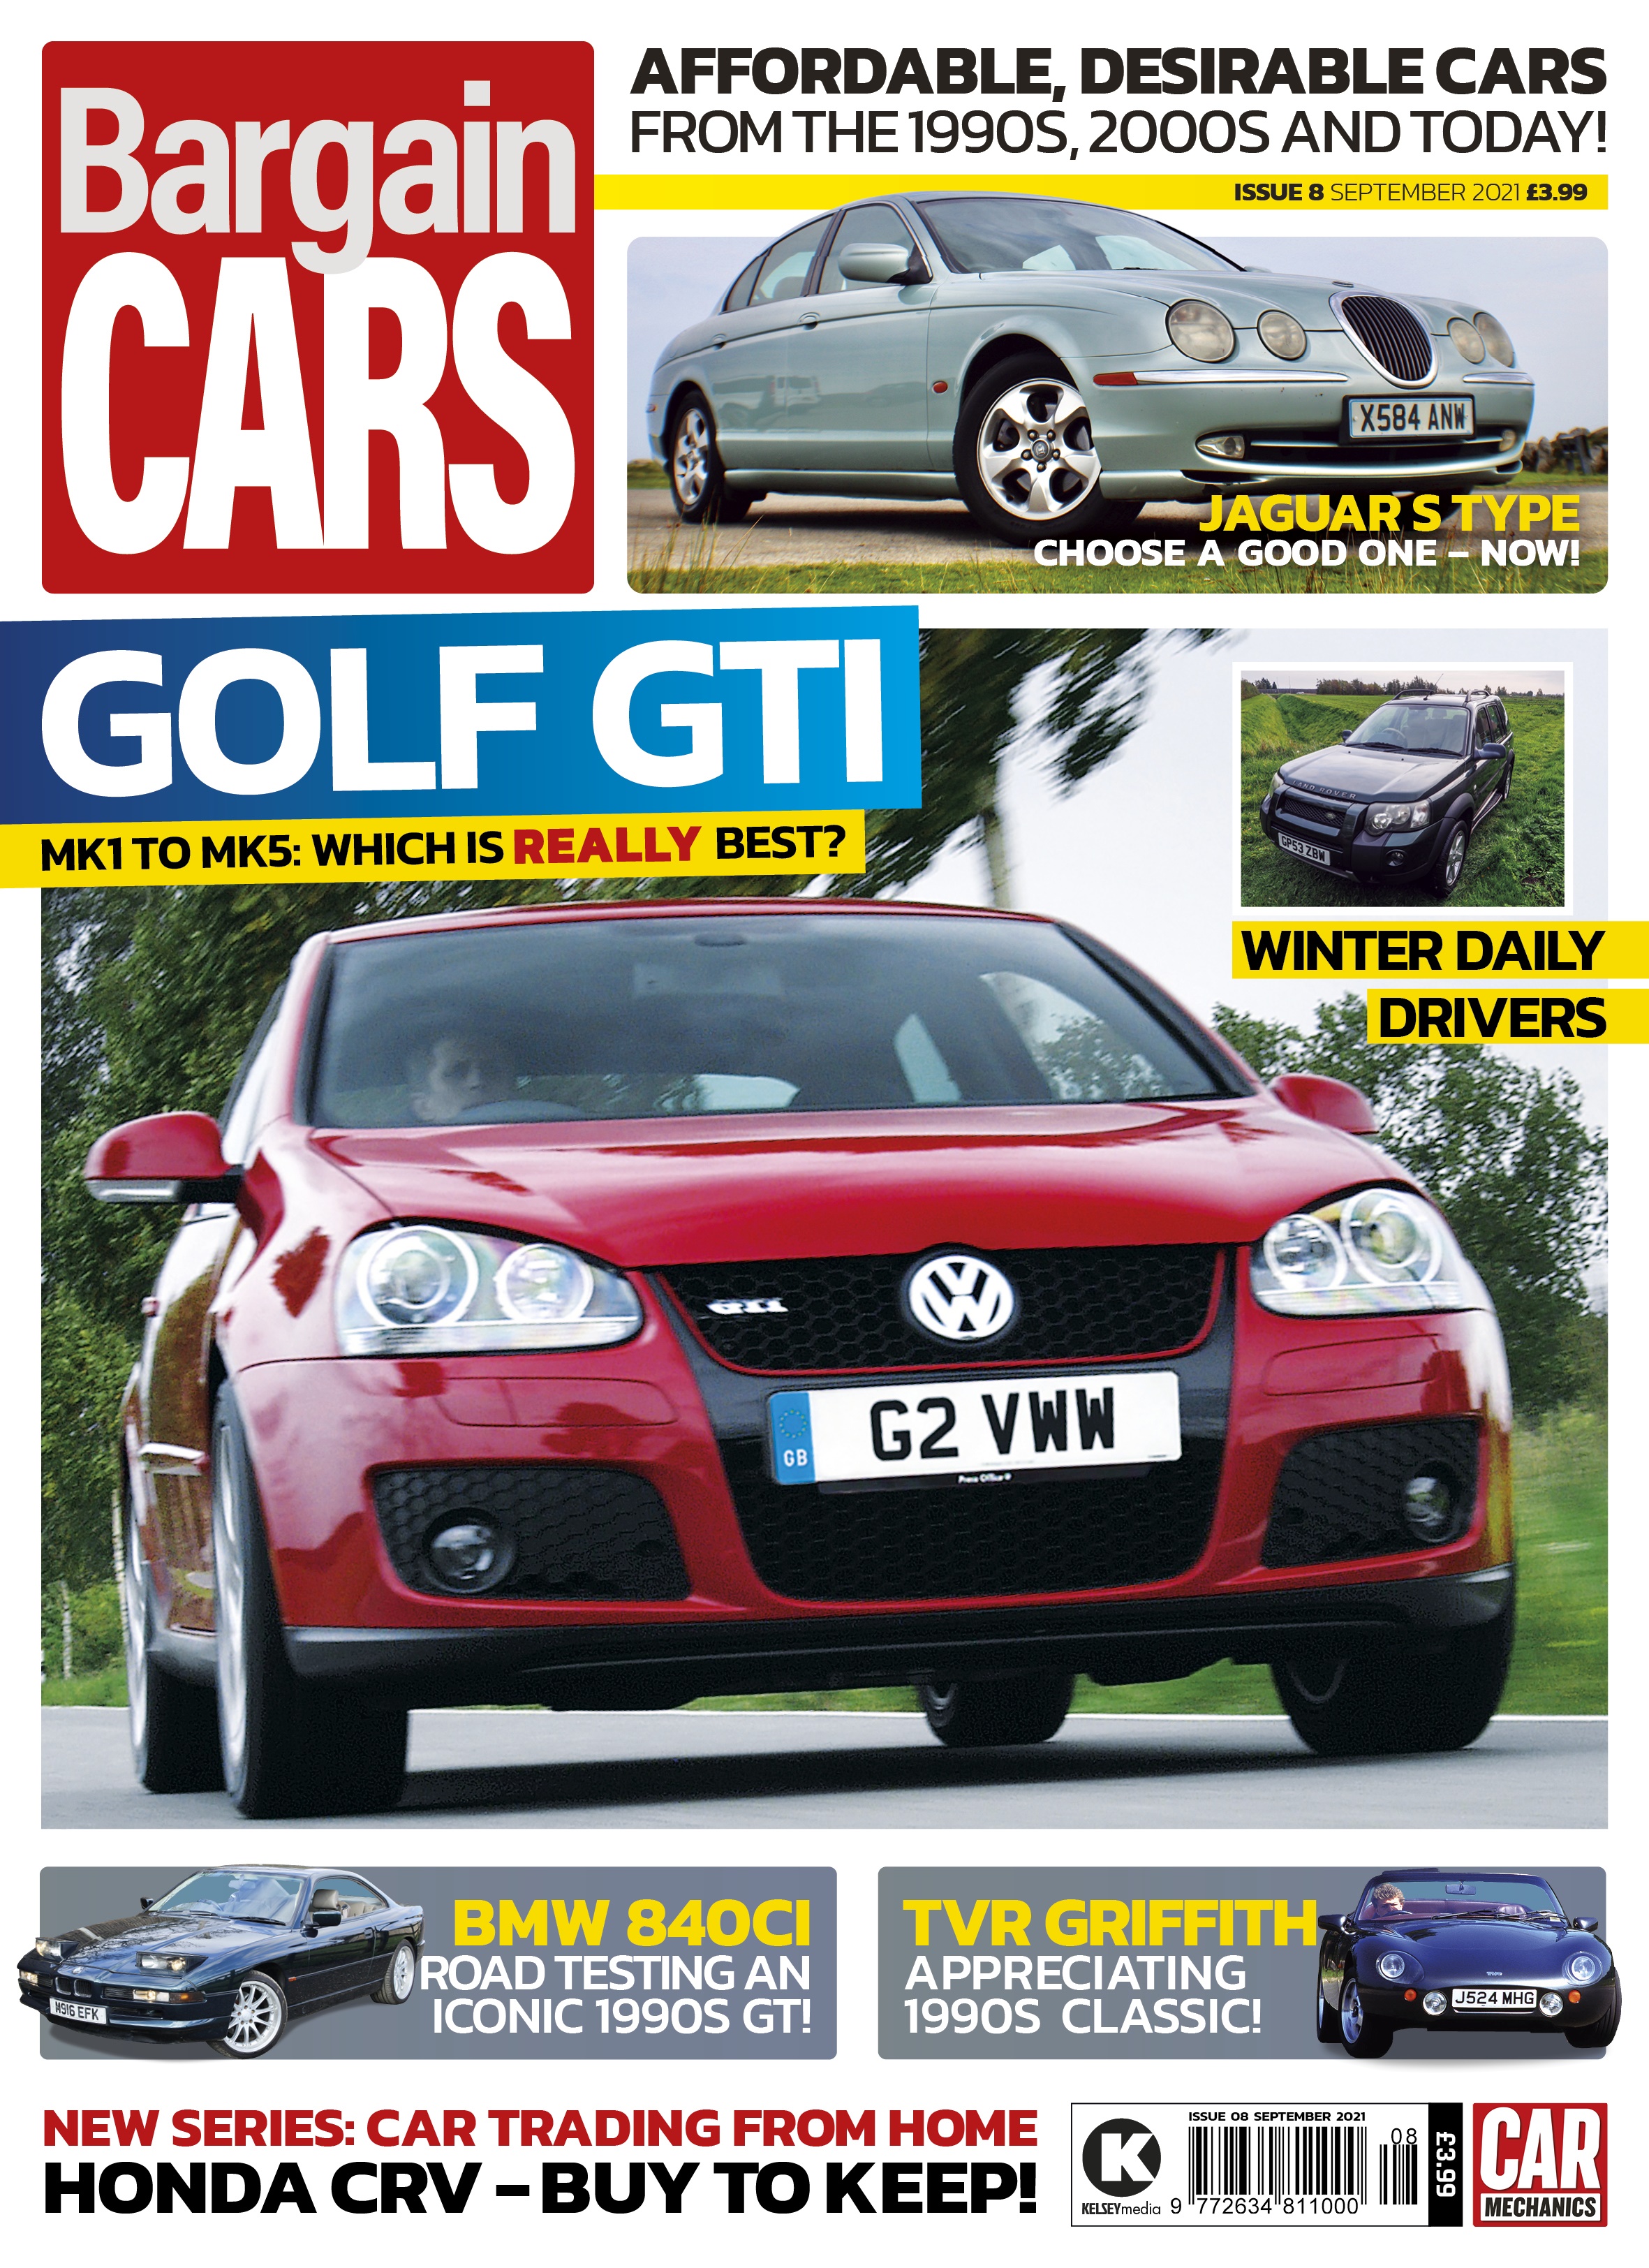 Bargain Cars Issue 8 - Sept 21